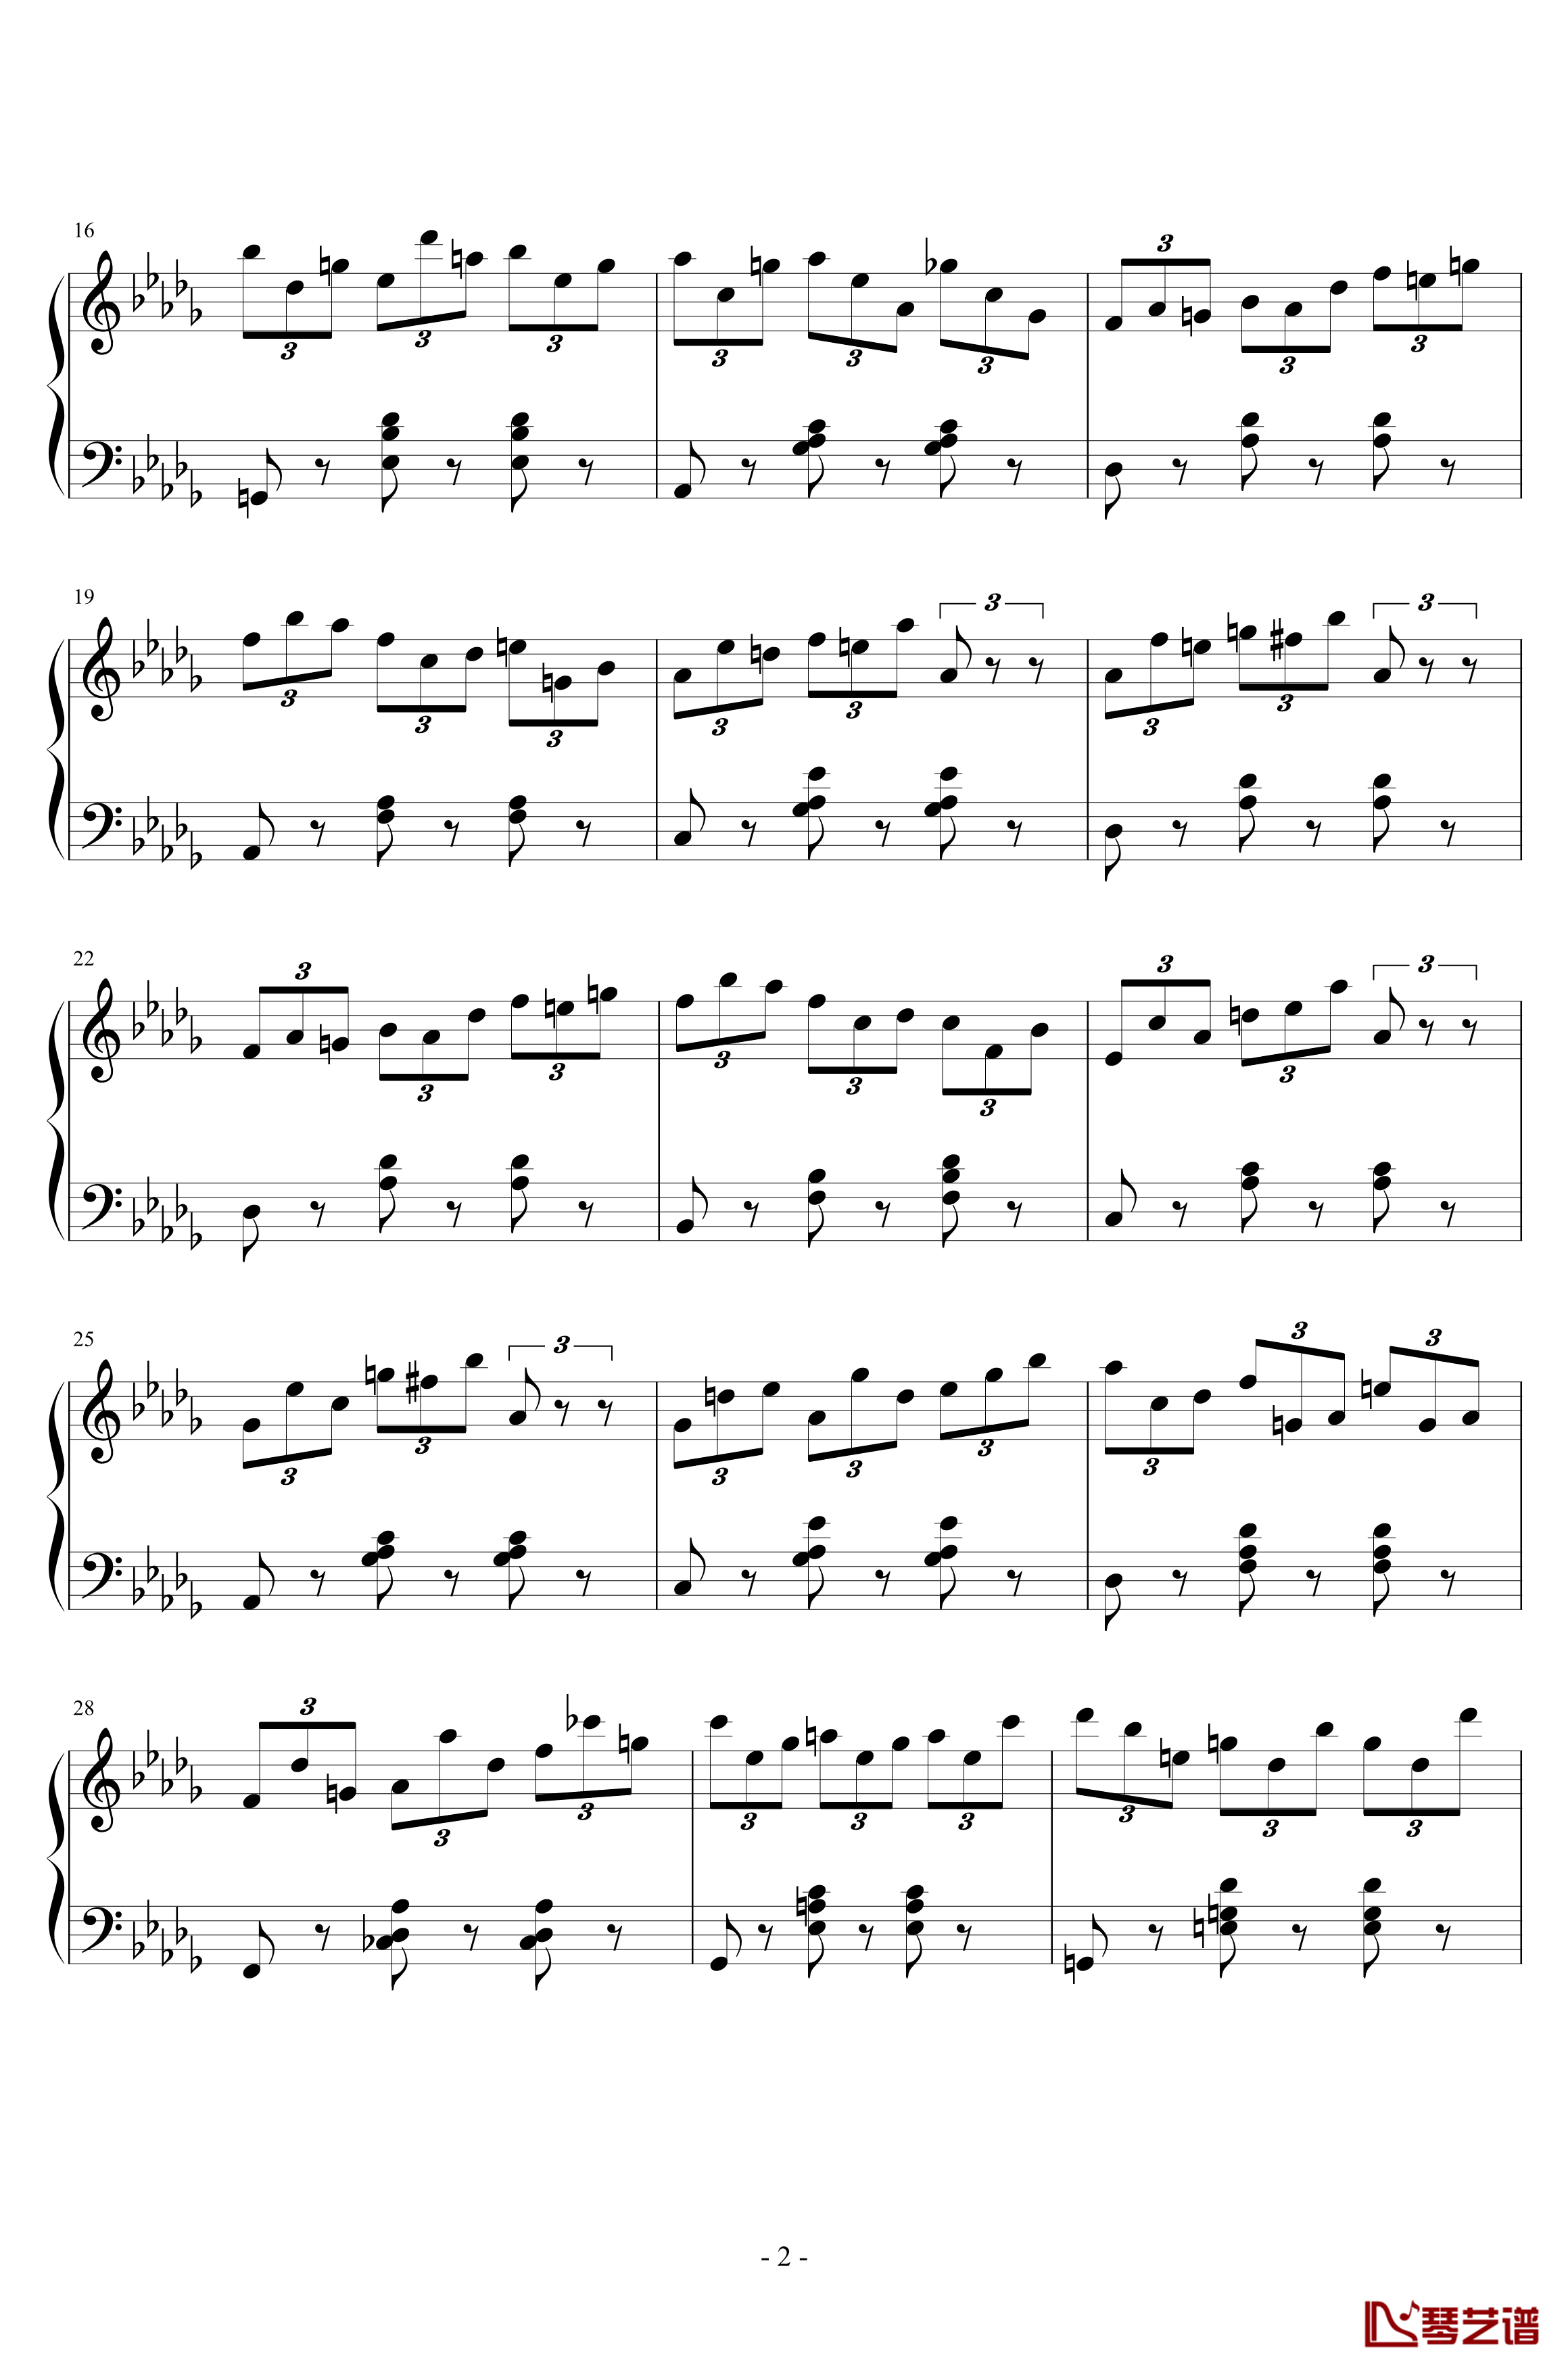 练习曲No.1 Op.6 降D大调练习曲钢琴谱-江畔新绿2